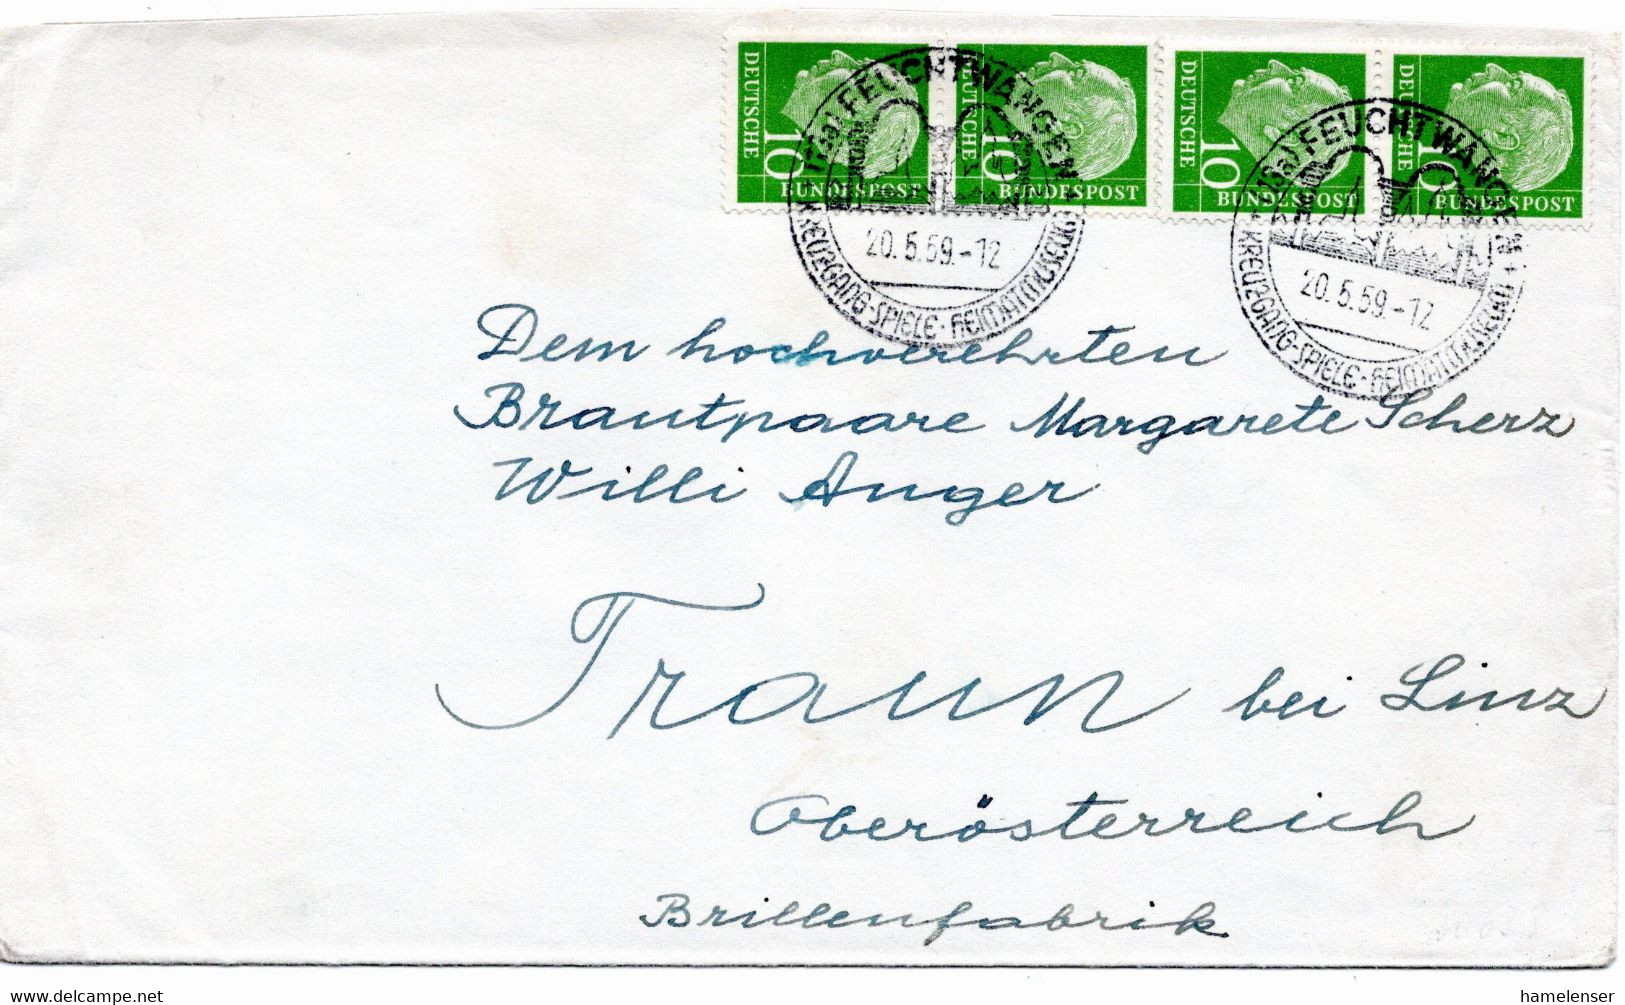 53258 - Bund - 1959 - 4@10Pfg. Heuss I A. Bf. Von FEUCHTWANGEN Nach Oesterreich - Brieven En Documenten